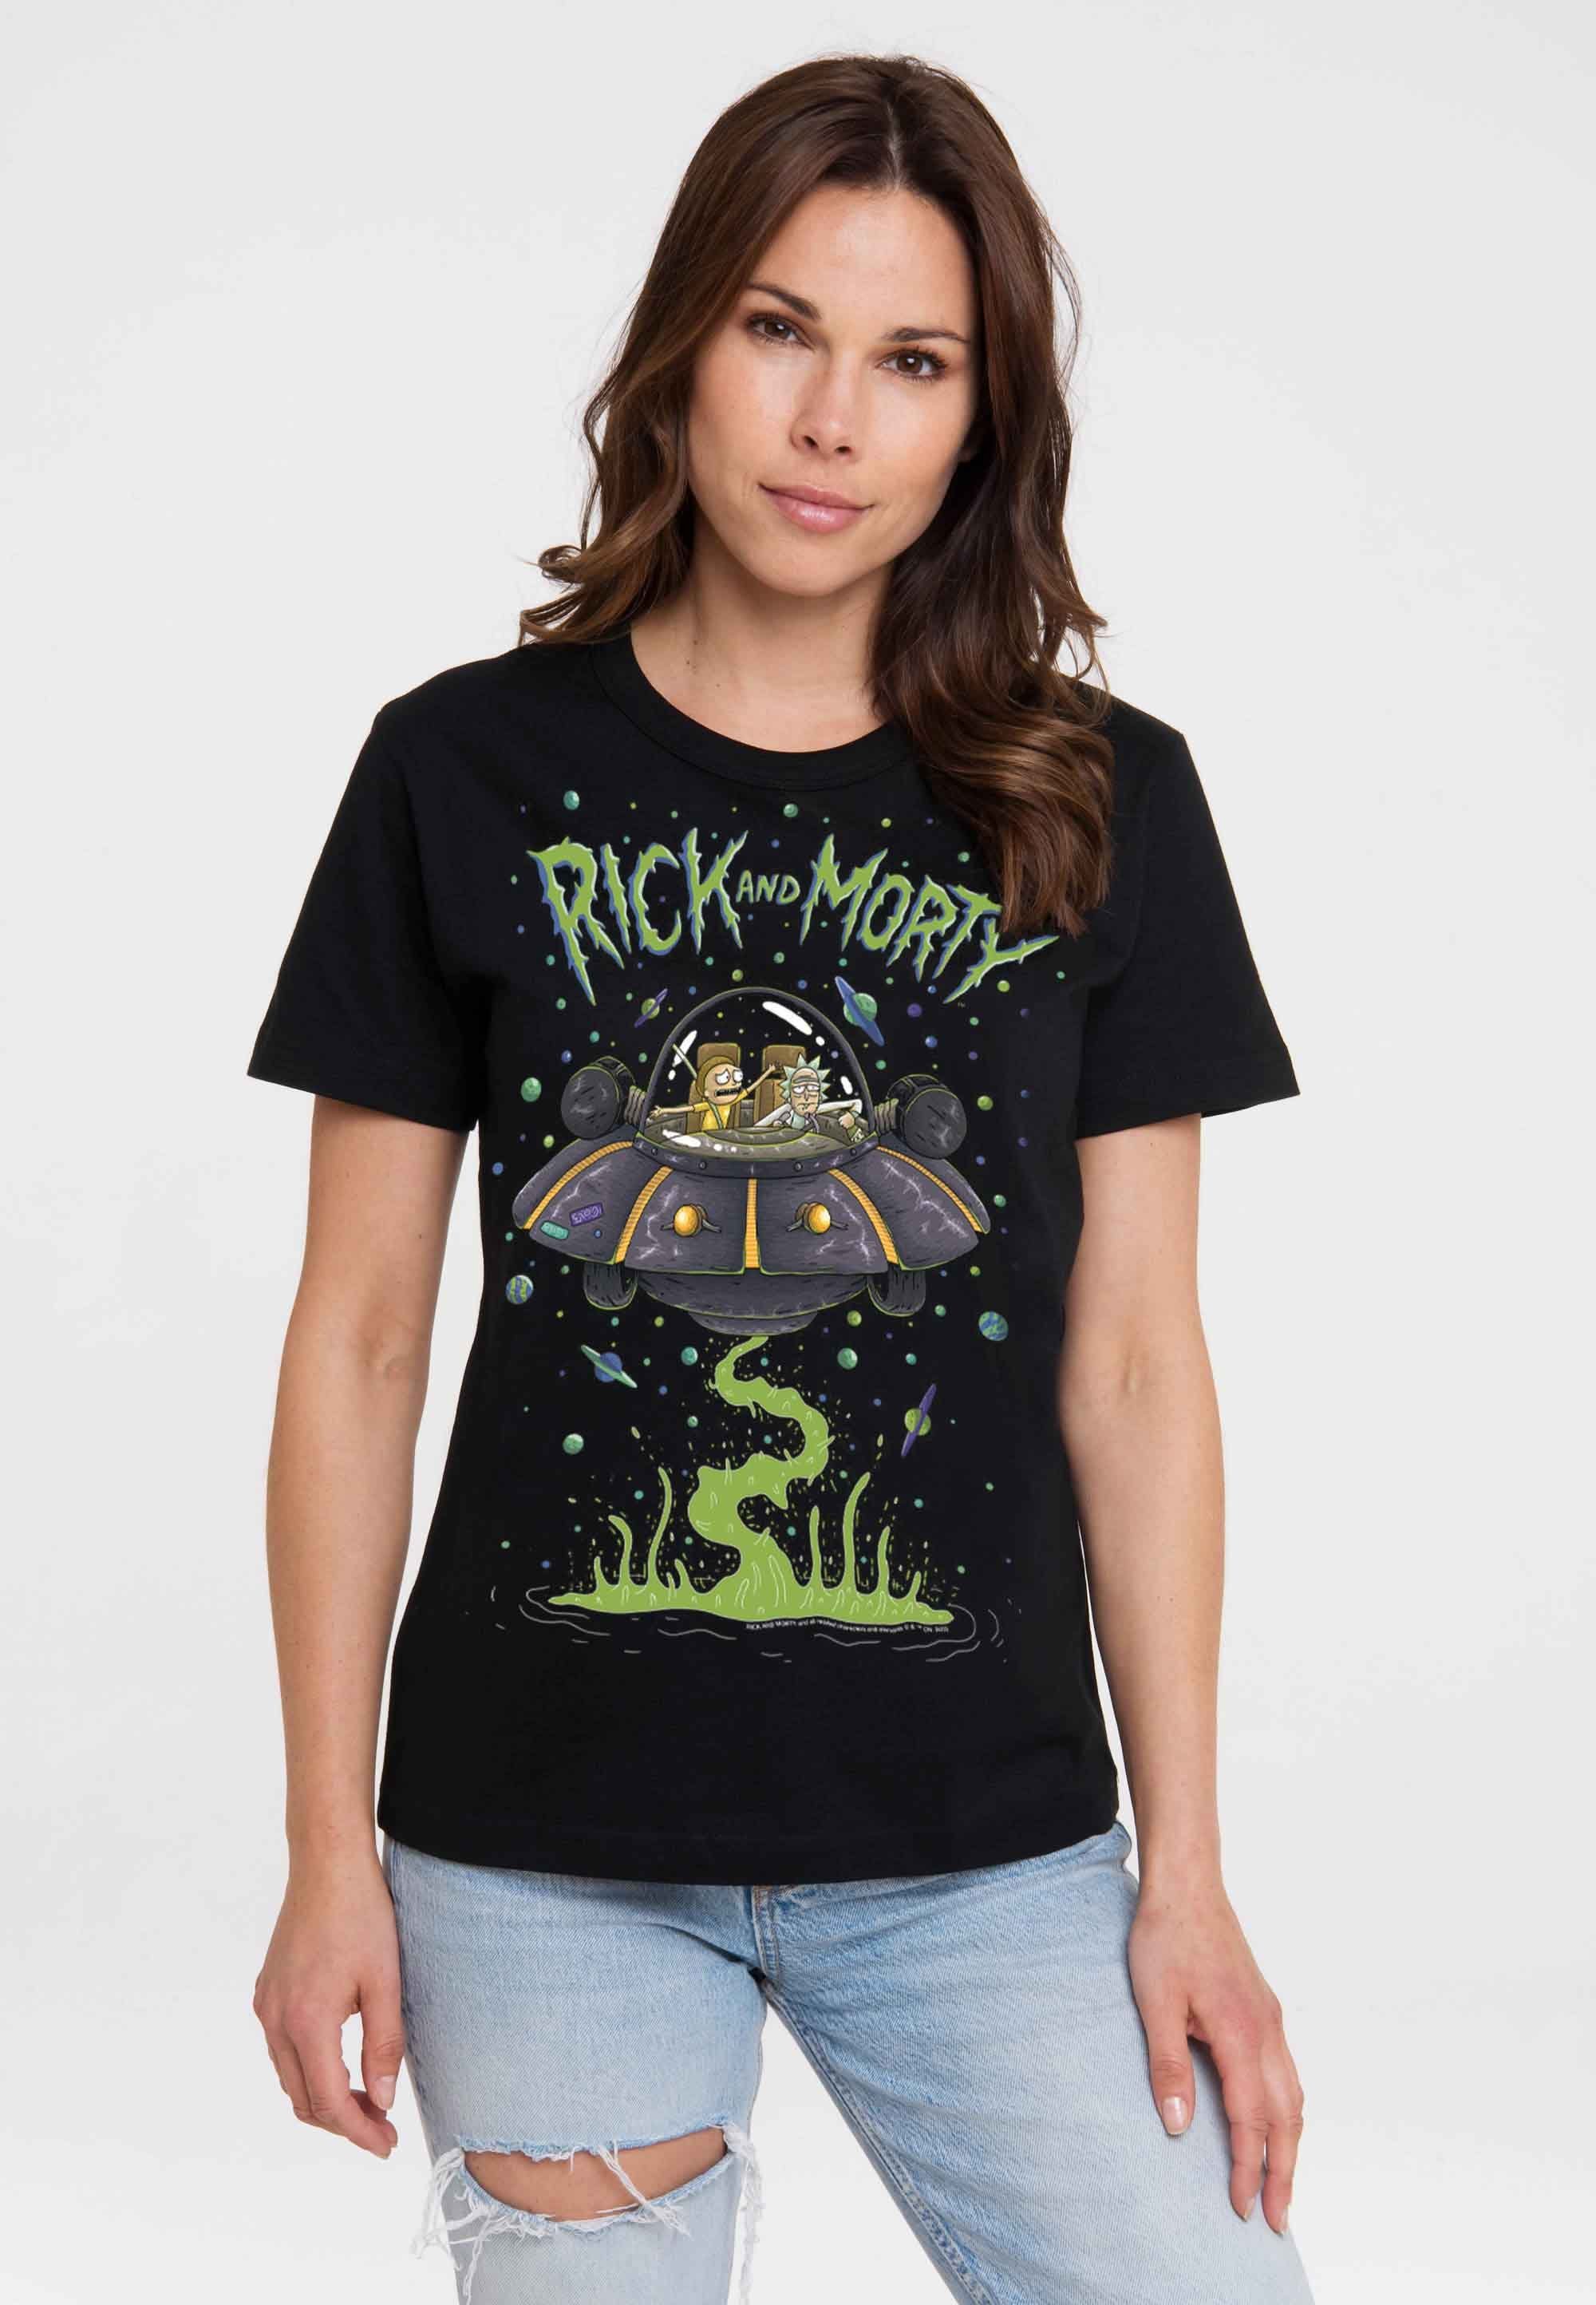 Morty Rick - & mit T-Shirt Raumschiff lizenziertem Print LOGOSHIRT